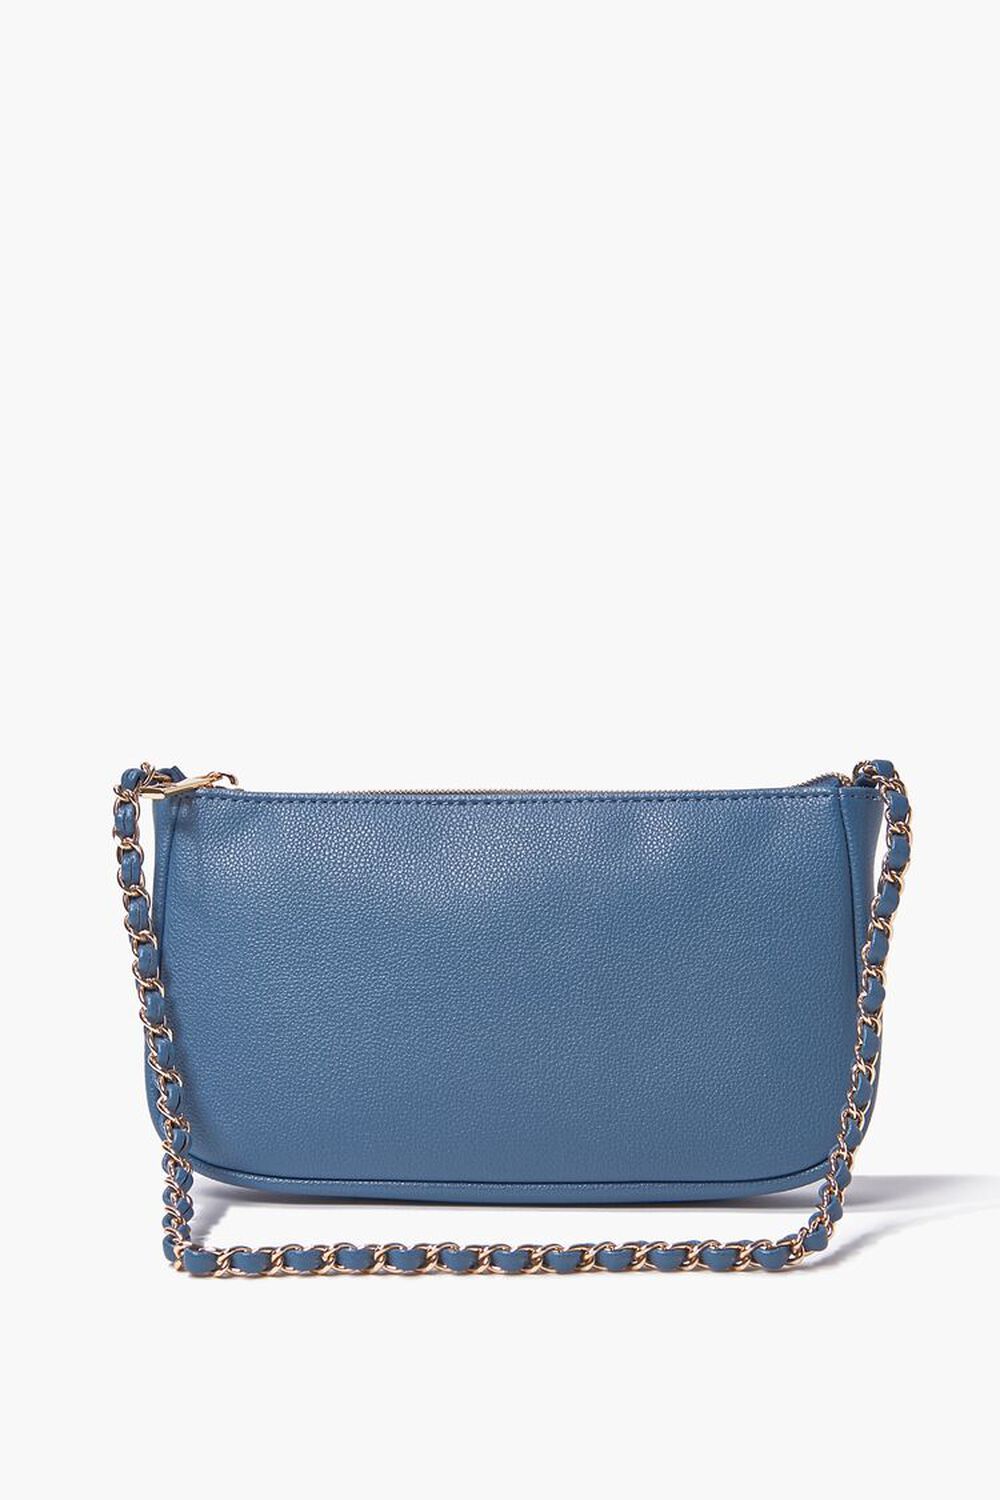 BLUE Faux Leather Zip-Up Shoulder Bag, image 1